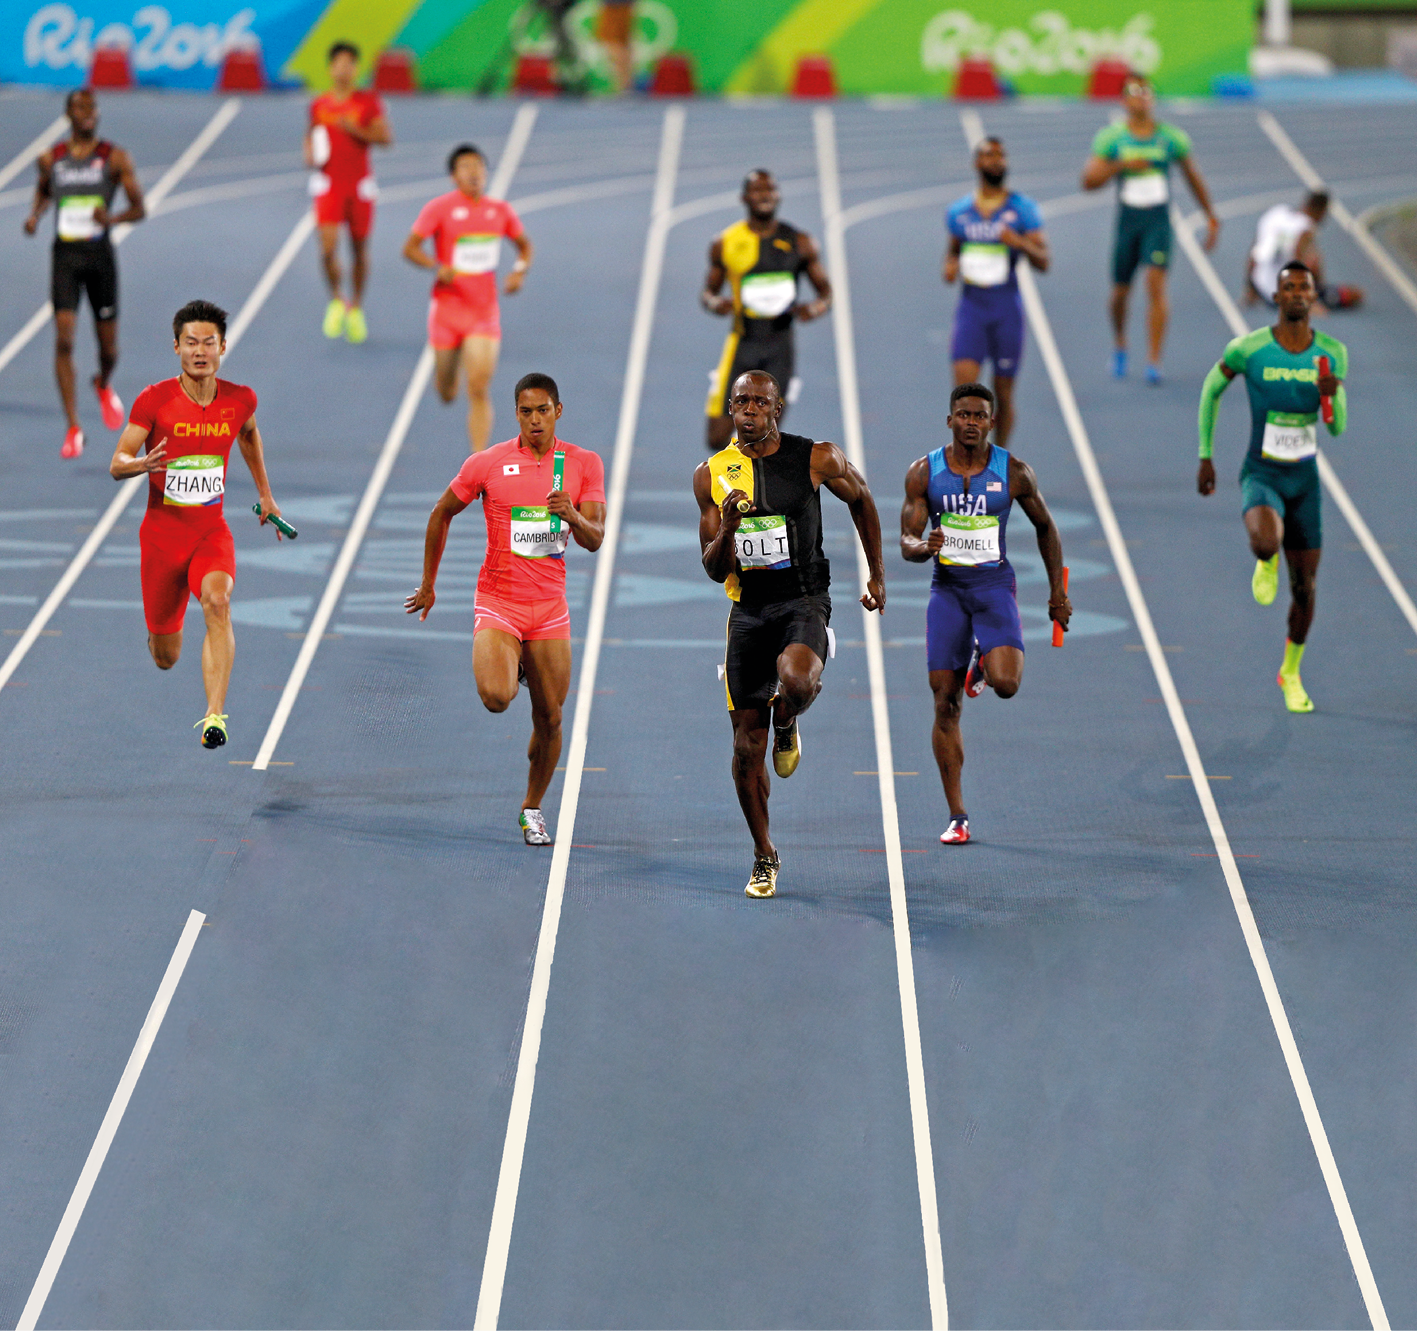 Fotografia. Em primeiro plano, homens correndo com bastões nas mãos em raias de uma pista de atletismo. Em segundo plano, nas mesmas raias e com os mesmos uniformes dos homens da frente, homens diminuindo a velocidade. Ao fundo, placas coloridas com a inscrição "Rio 2016".